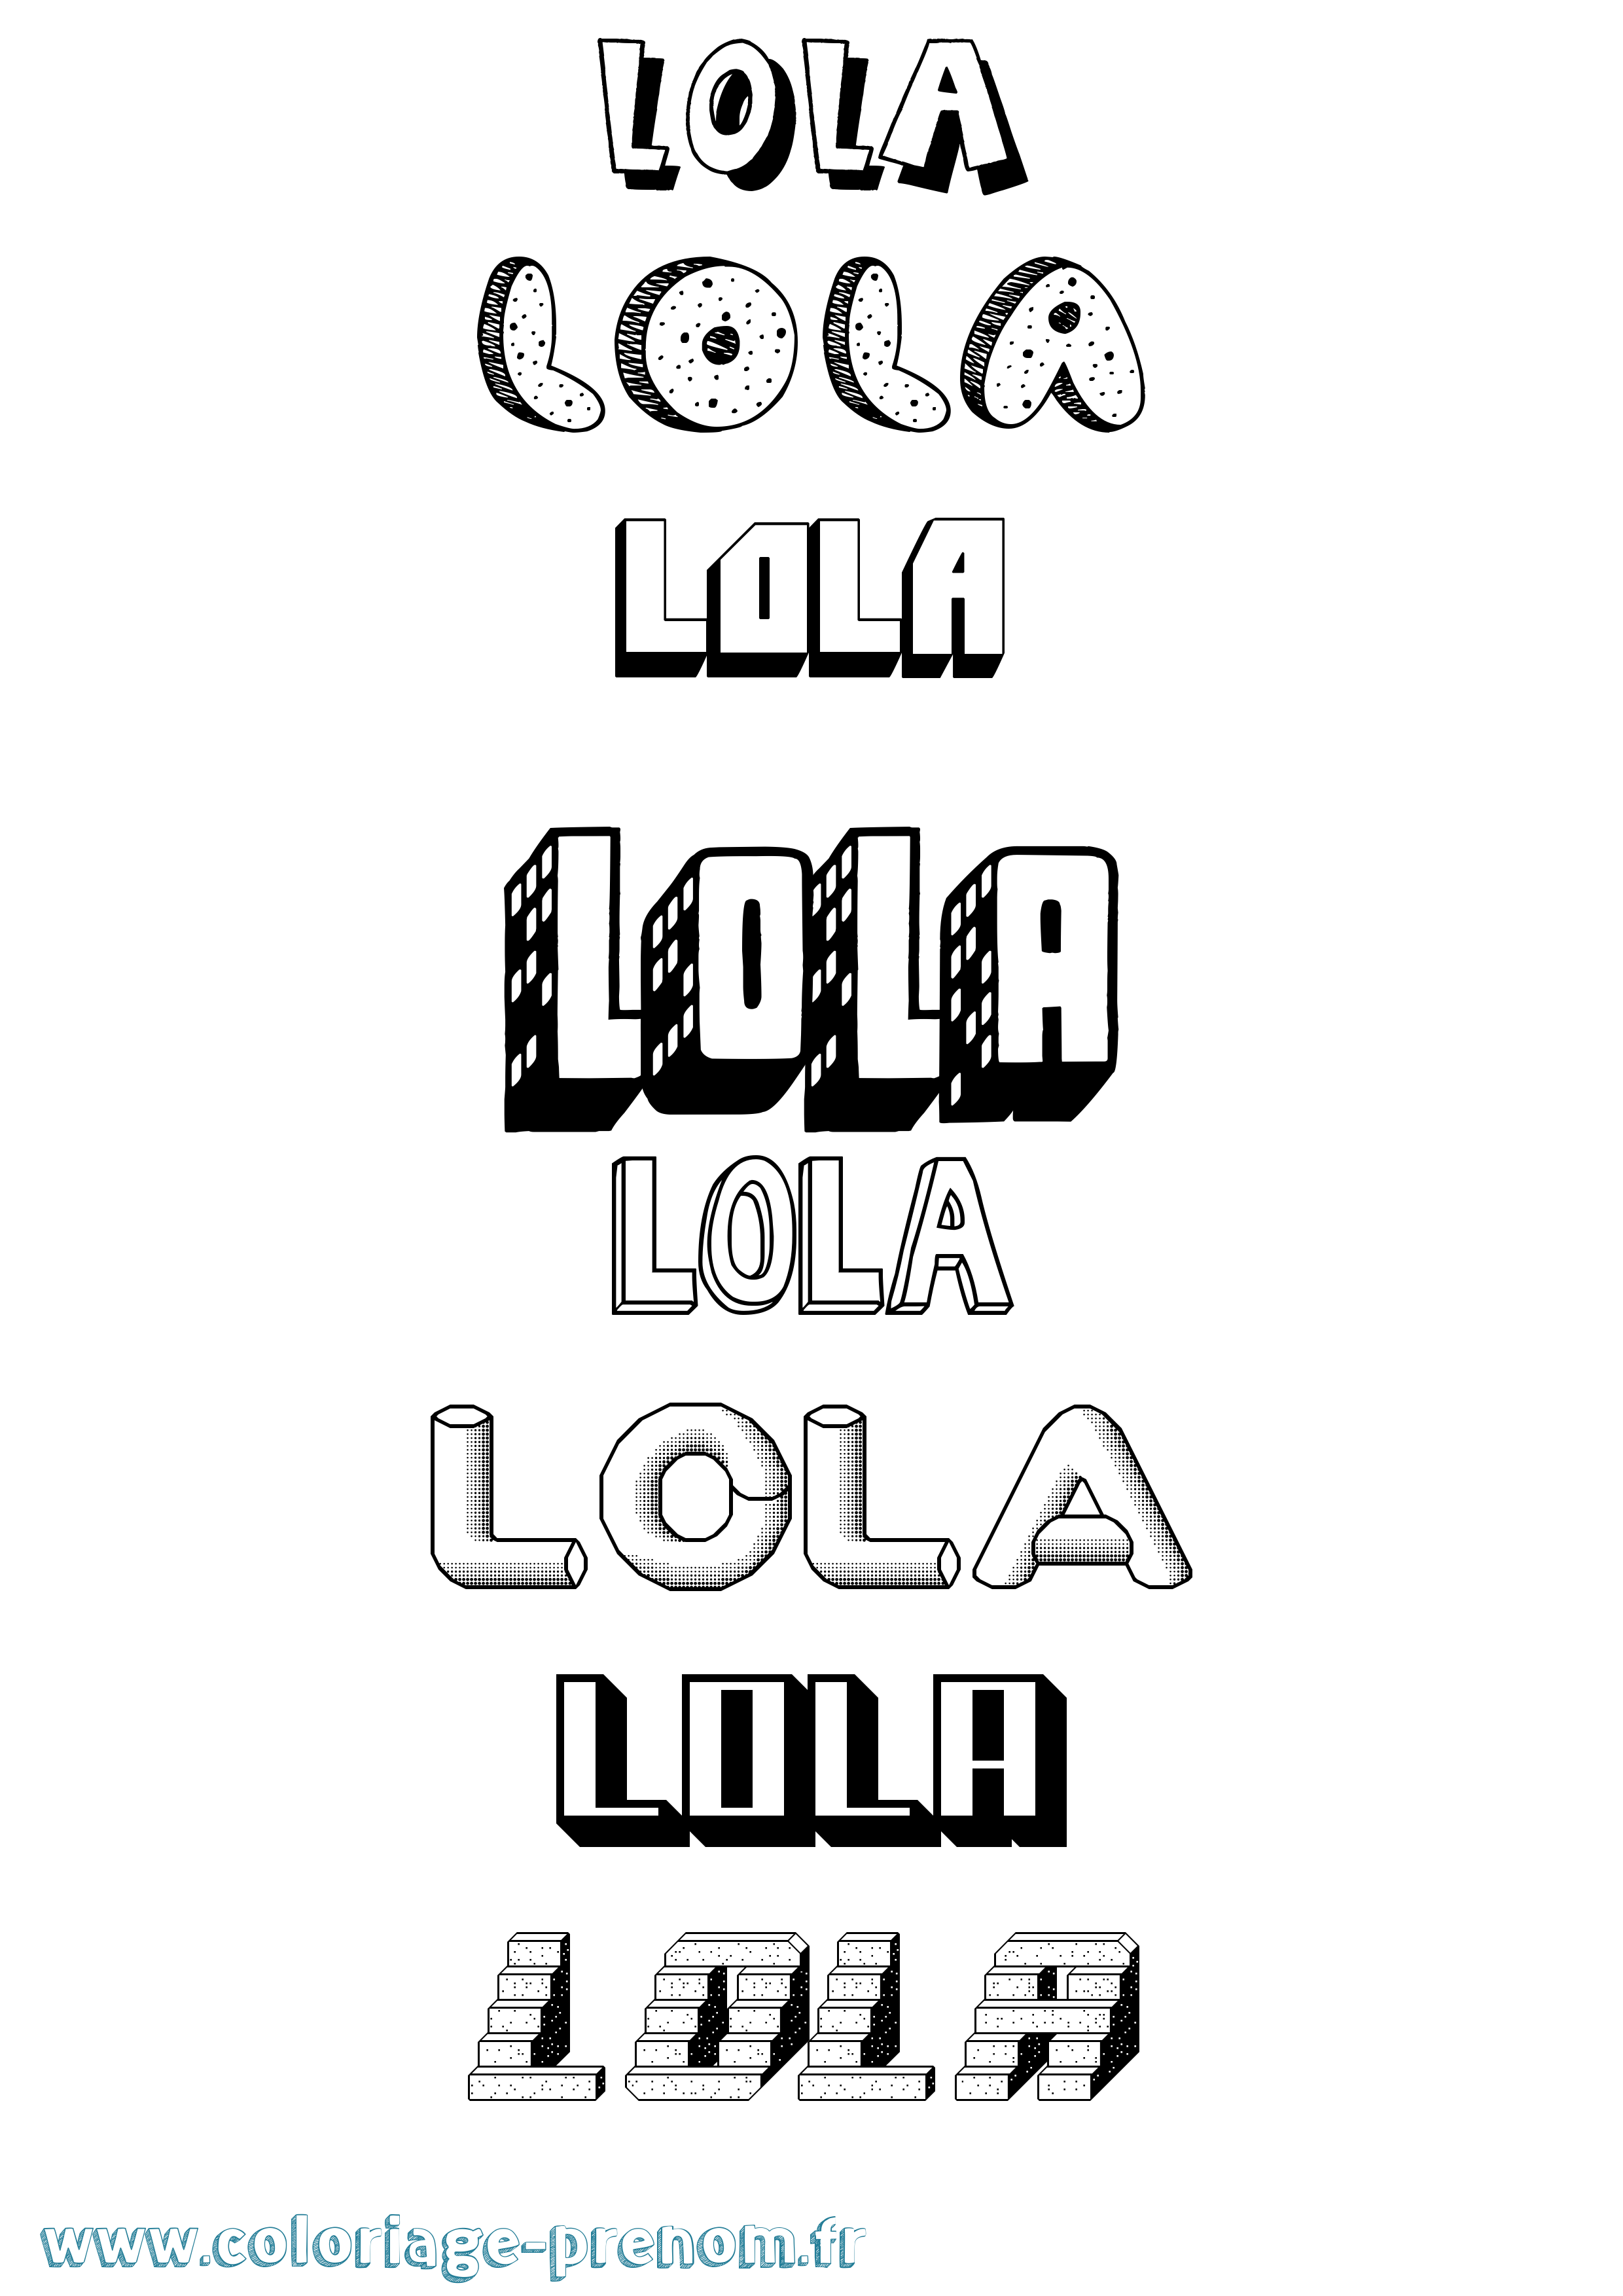 Coloriage du prénom Lola : à Imprimer ou Télécharger facilement